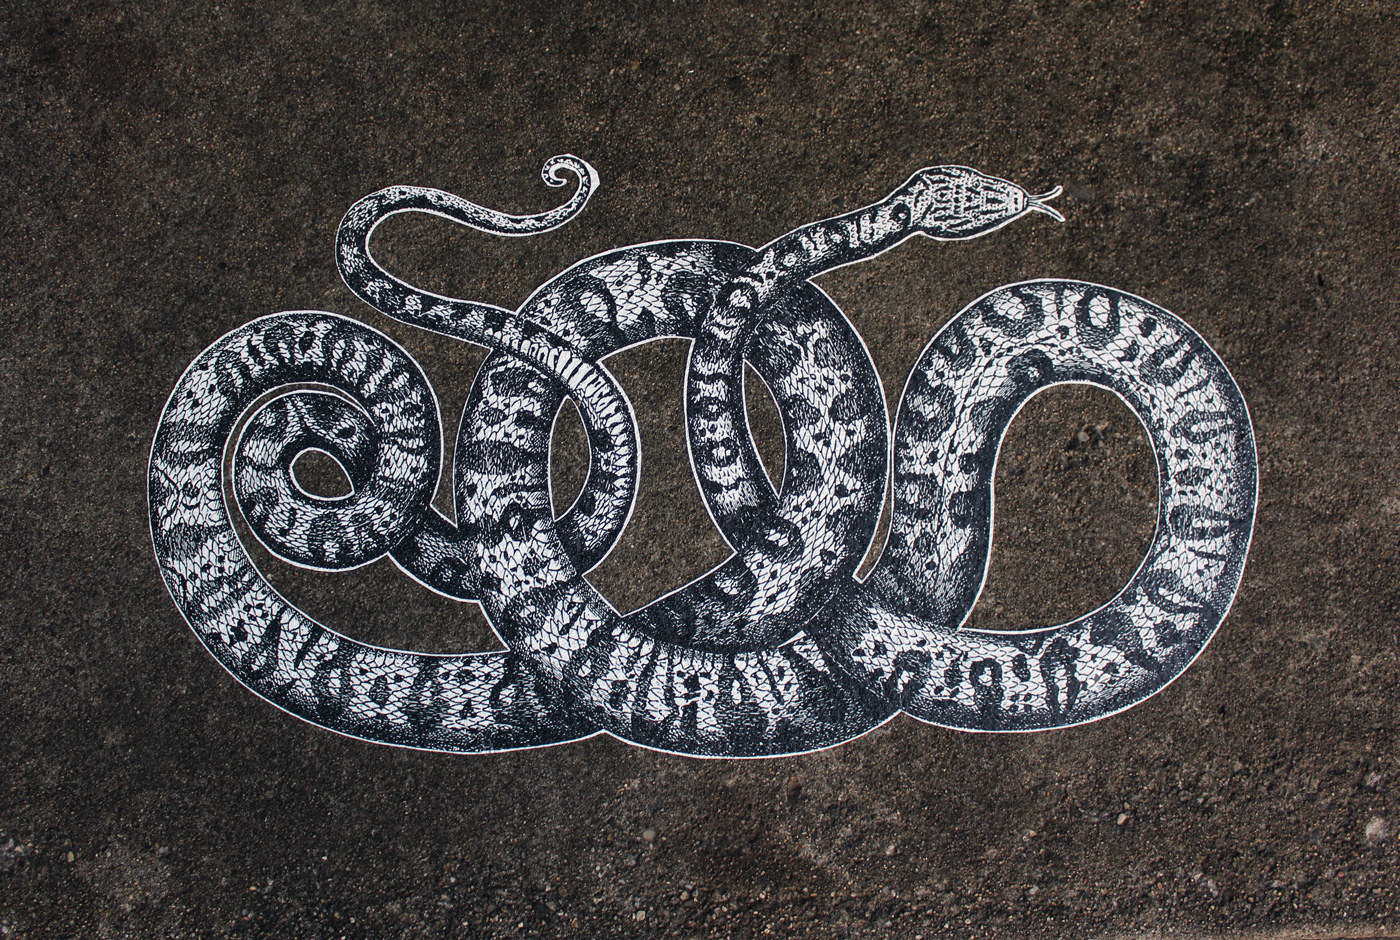 Snake Illustration on Outdoor Concrete Sidewalk